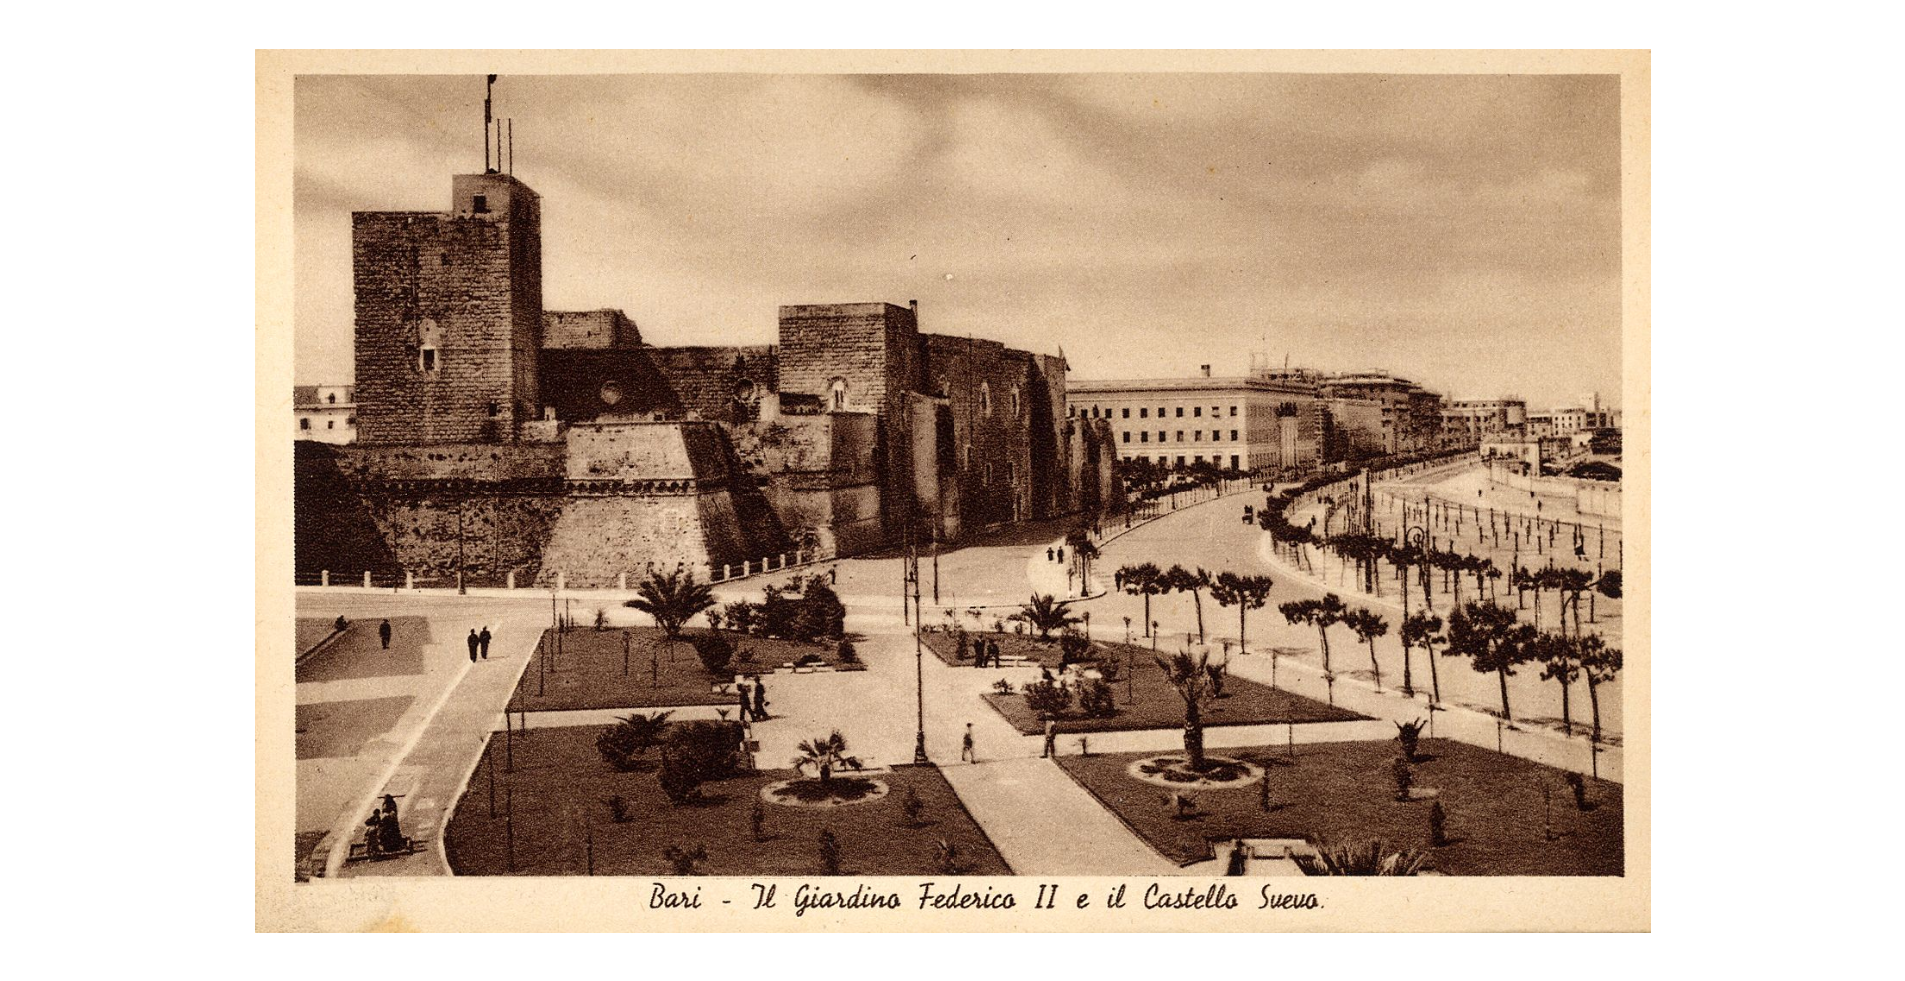 Fotografo non identificato, Bari - Il giardino Federico II e il Castello Svevo, 1925-1940, cartolina, FFC017593